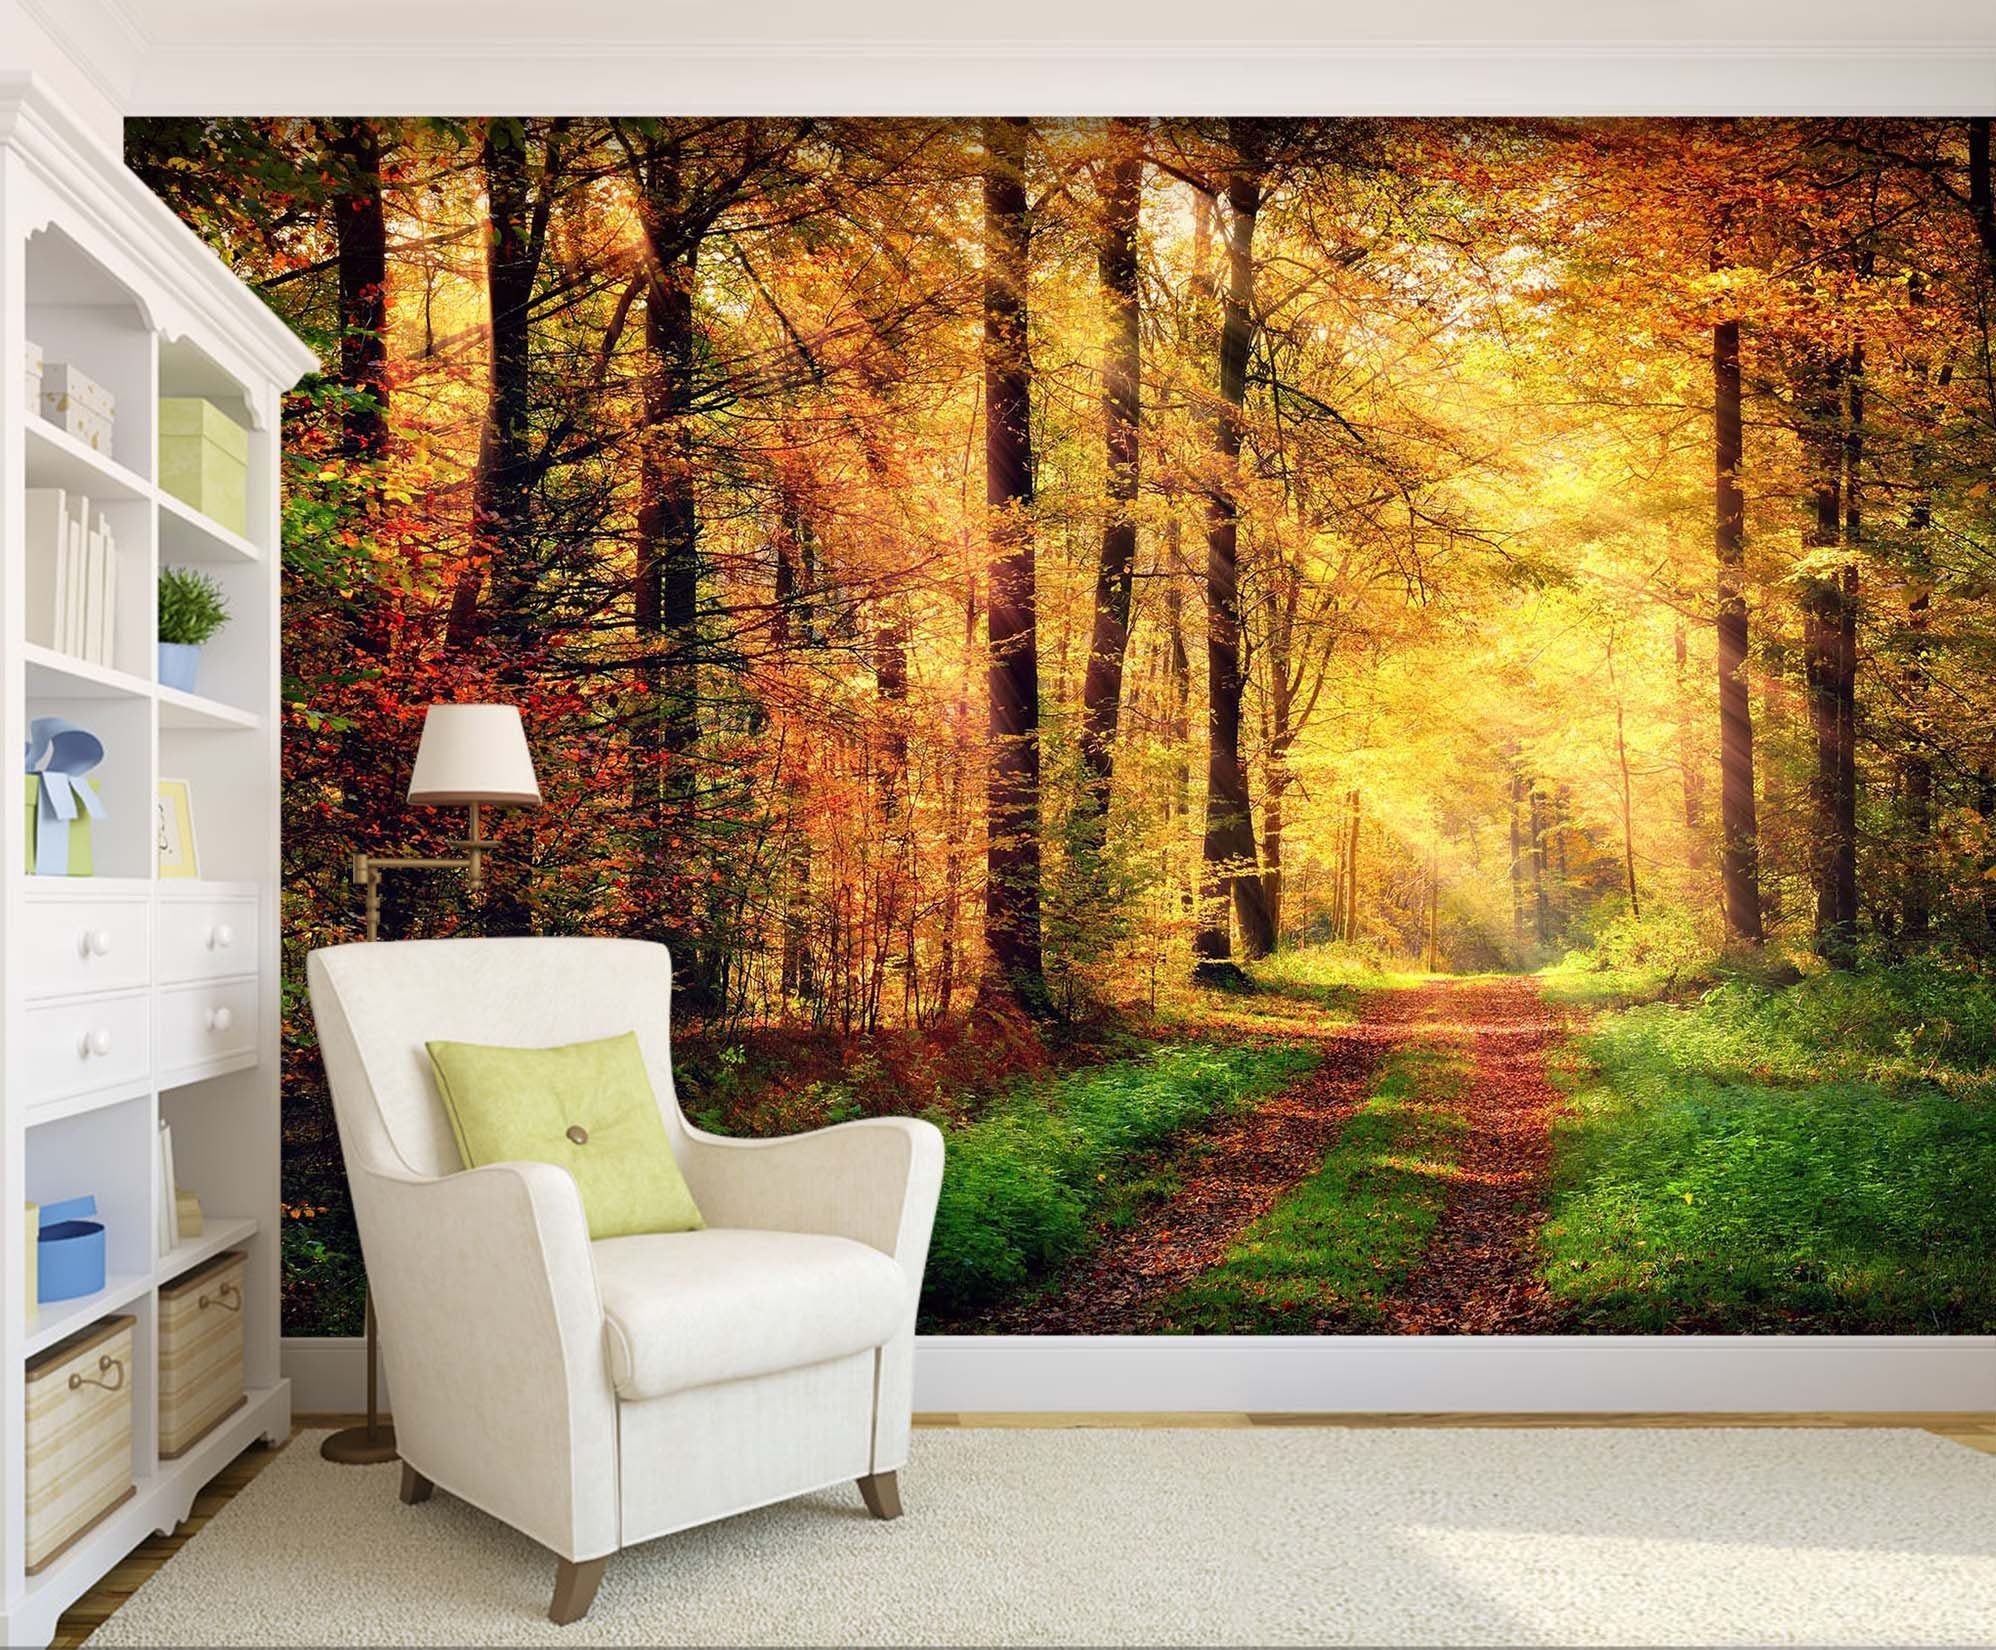 3D Autumn Forest 127 Wall Murals Wallpaper AJ Wallpaper 2 